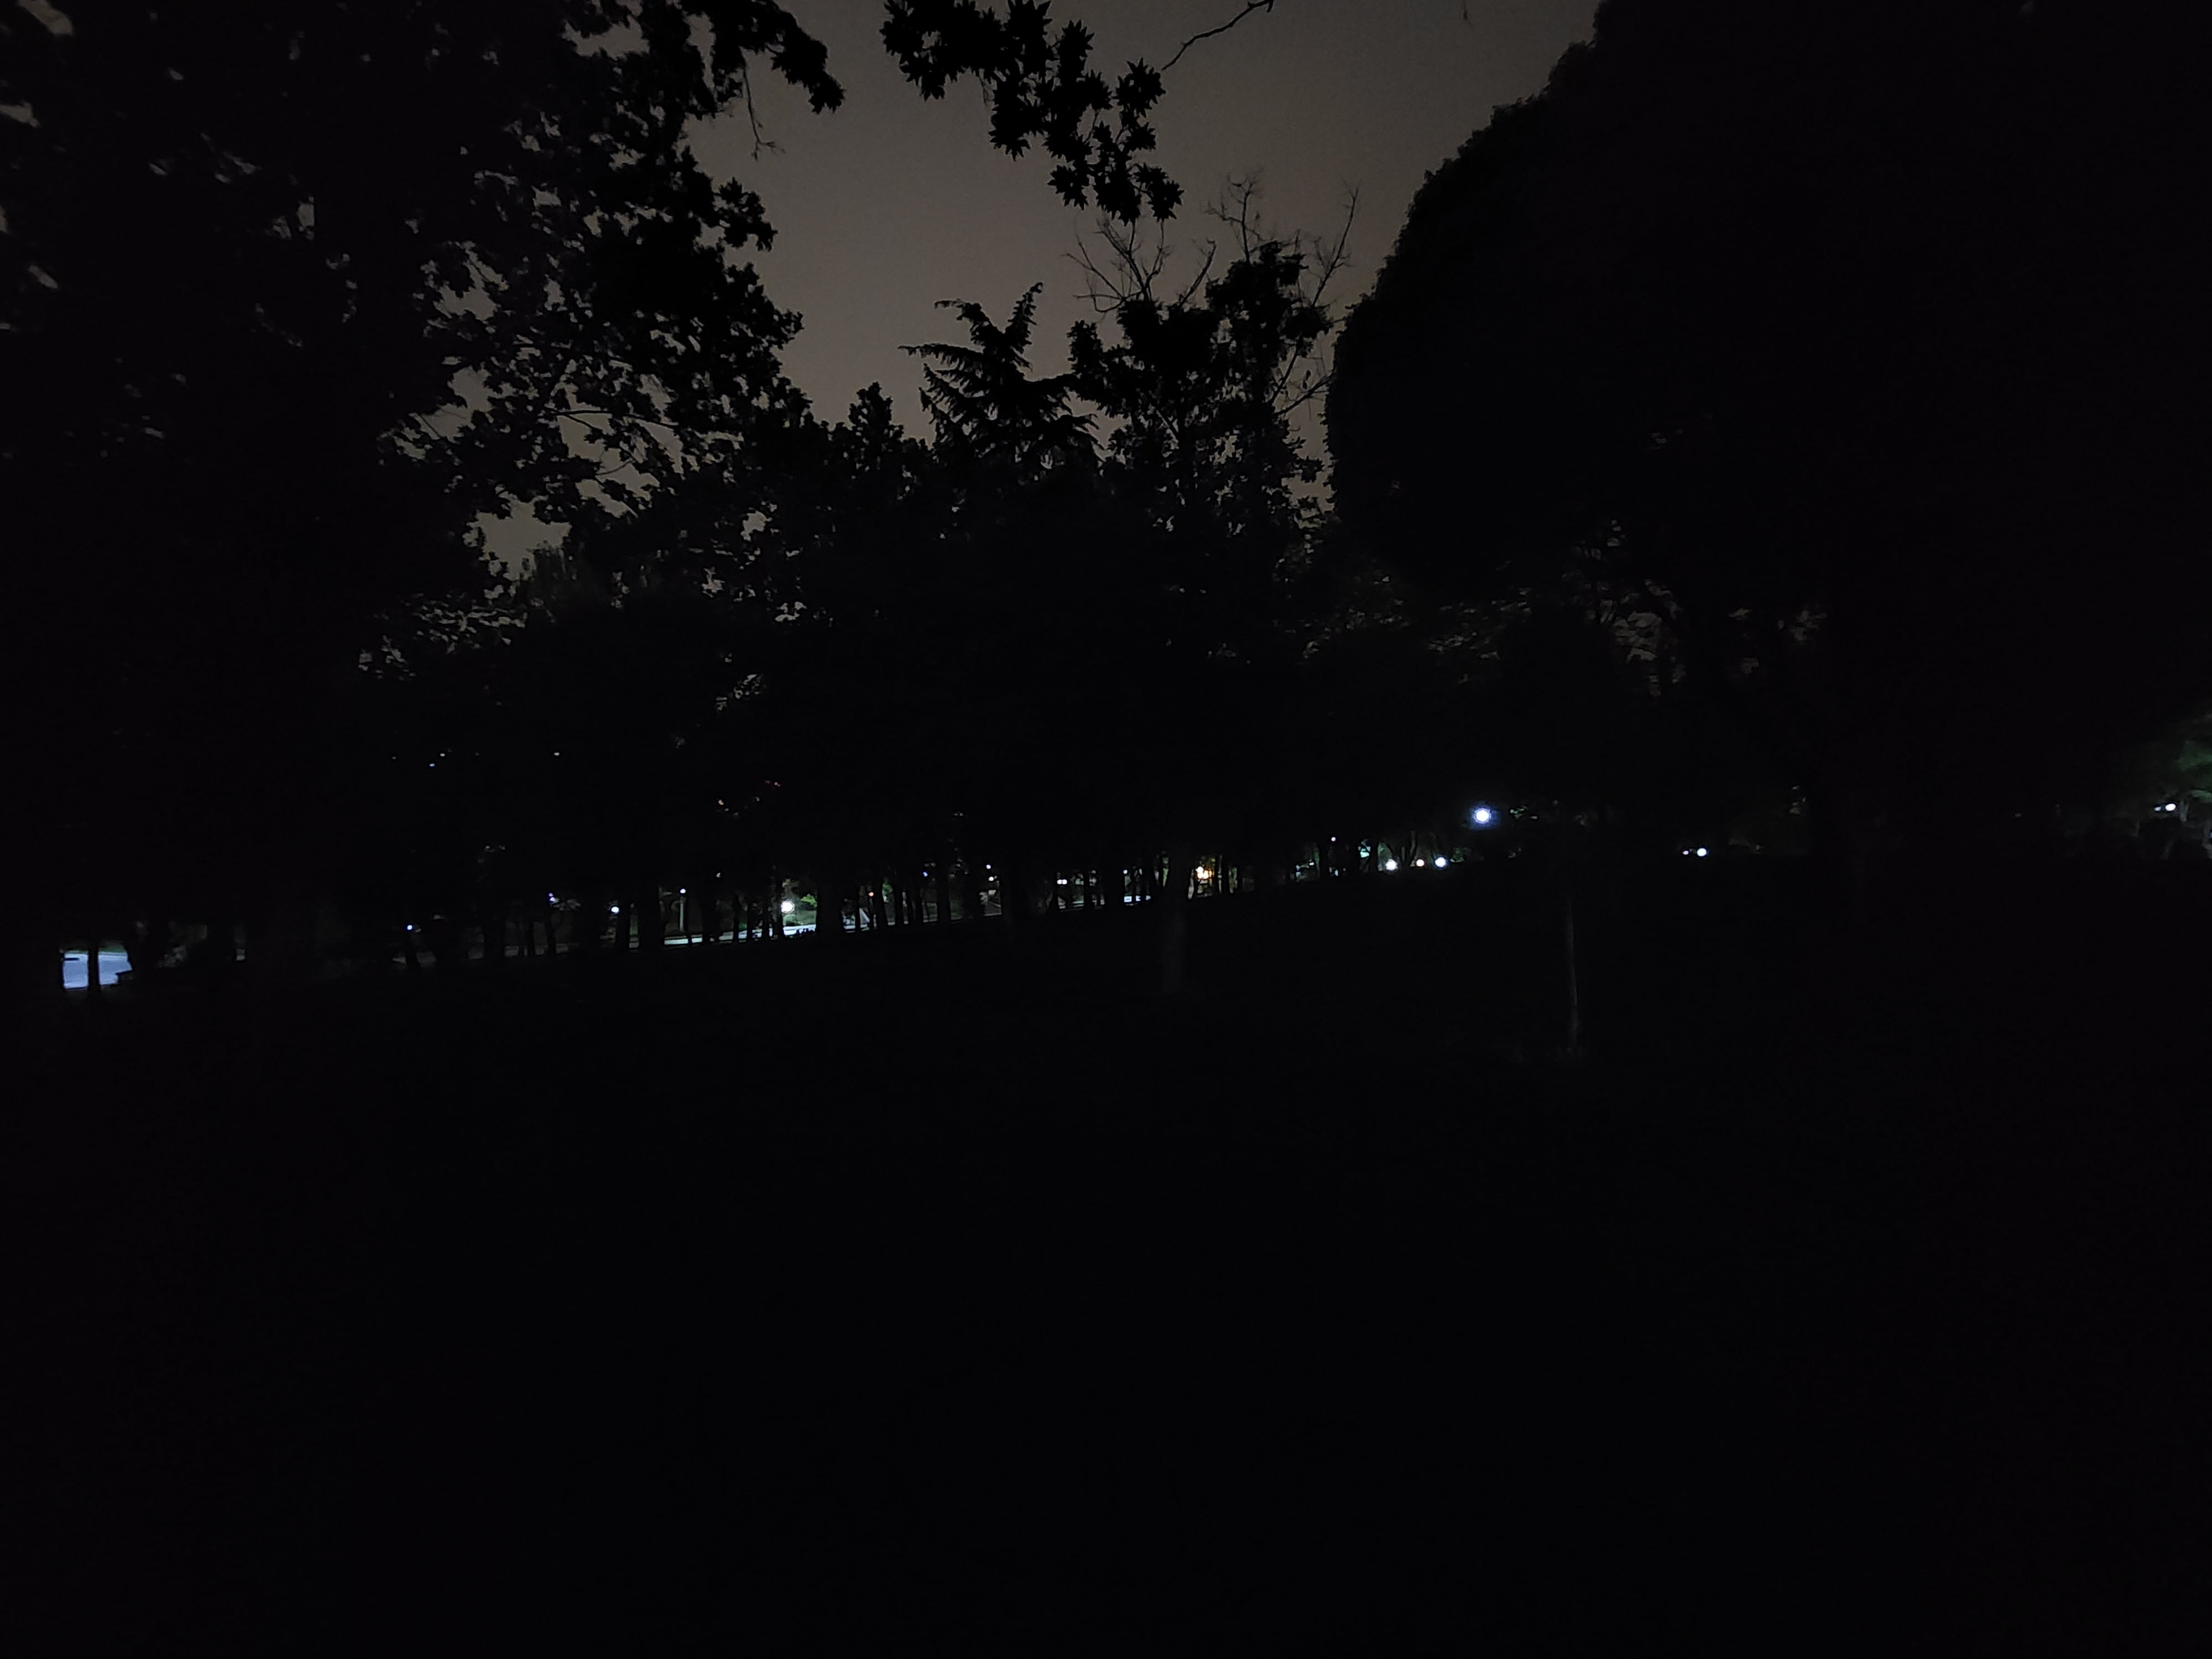 نمونه عکس اولتراواید در شب با S22 Ultra